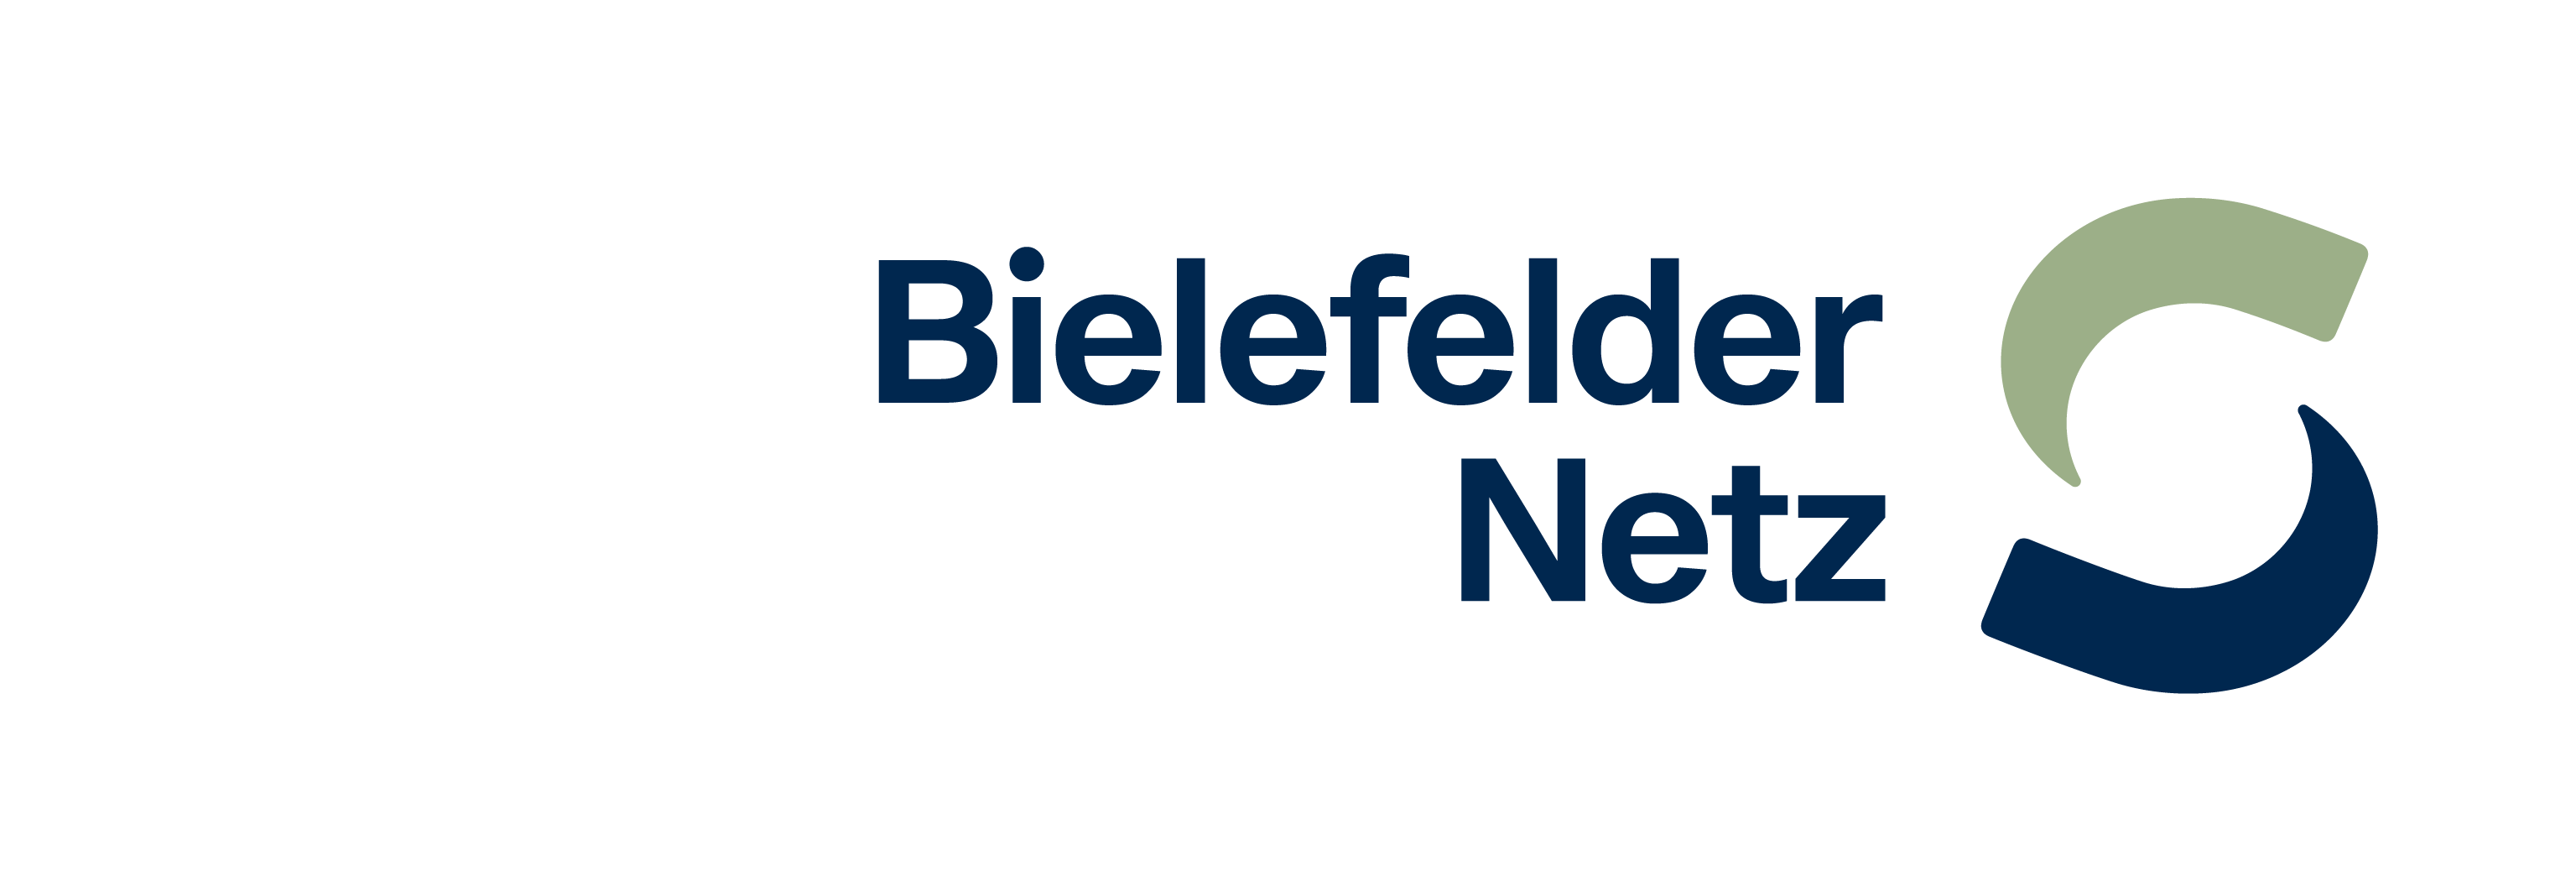 Das Bild zeigt das Logo der Bielefelder Netz GmbH